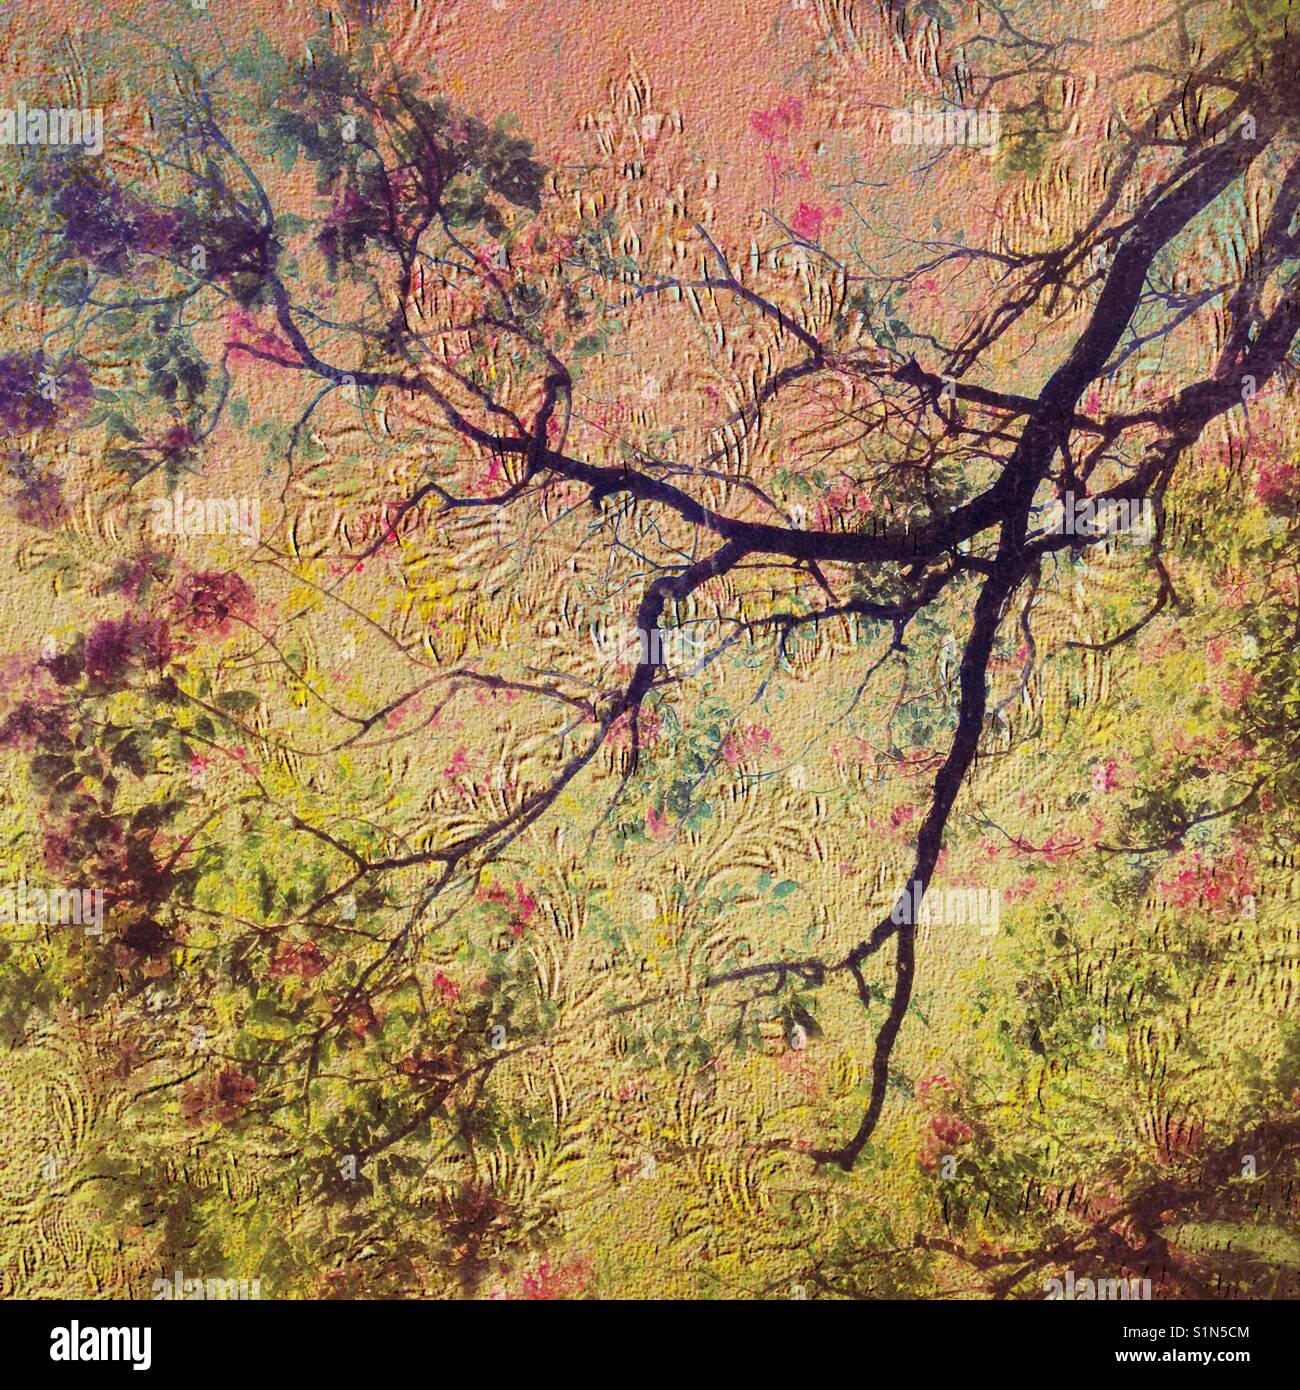 Fantasy albero nel bosco, doppio effetto di esposizione, testurizzati, modellato, stratificati iPhone foto della struttura a sbalzo con filtri e carta da parati vintage Foto Stock